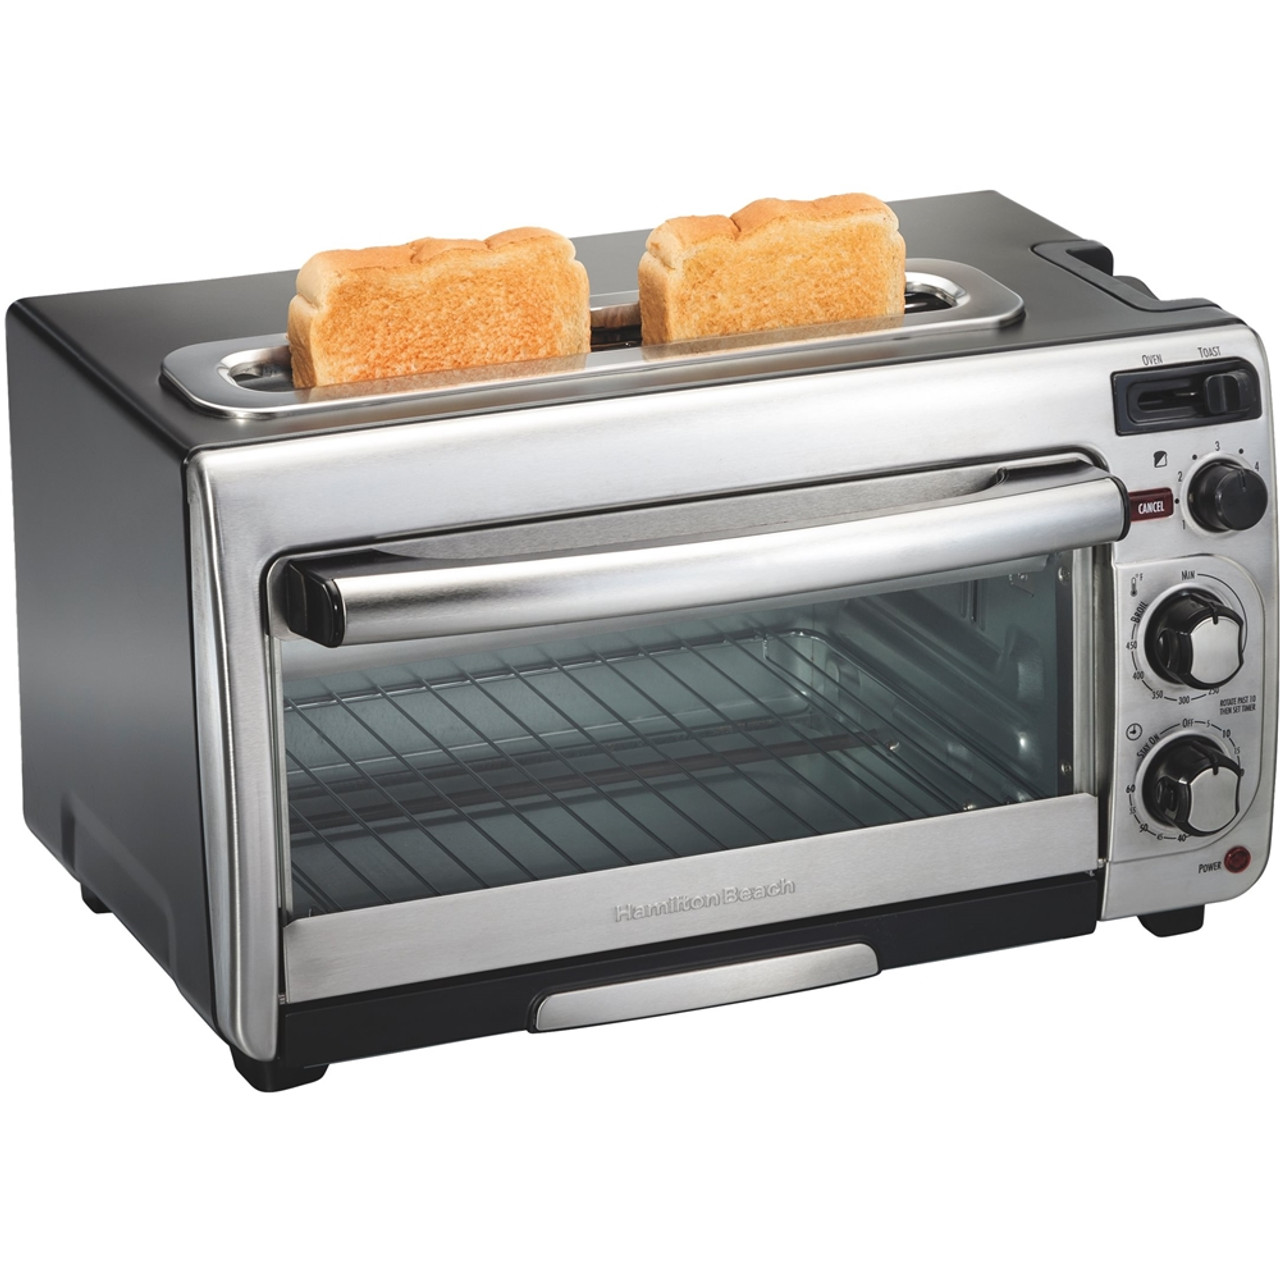 Hamilton Beach - 2-Slice Toaster Oven - Stainless steel